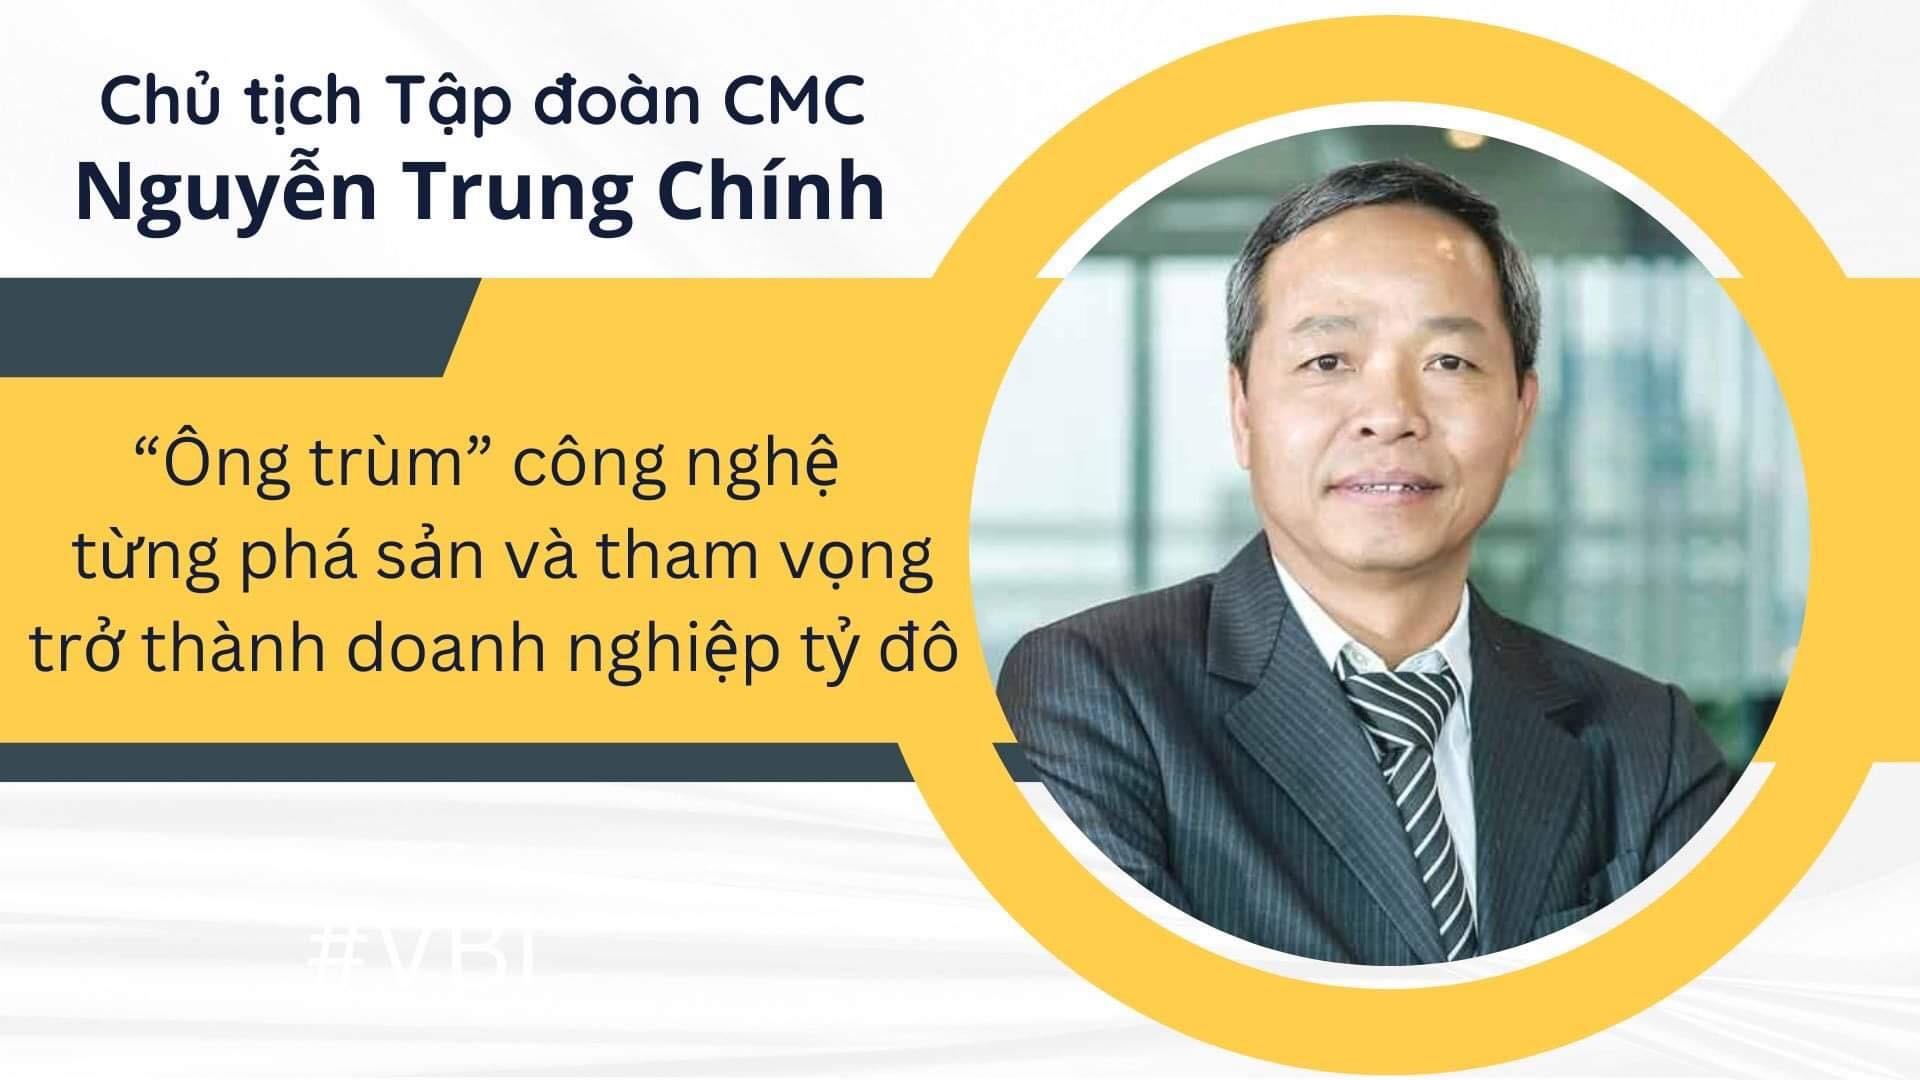 Chân dung Chủ tịch Tập đoàn CMC Nguyễn Trung Chính – “Ông trùm” công nghệ Việt Nam từng phá sản và tham vọng trở thành doanh nghiệp tỷ đô